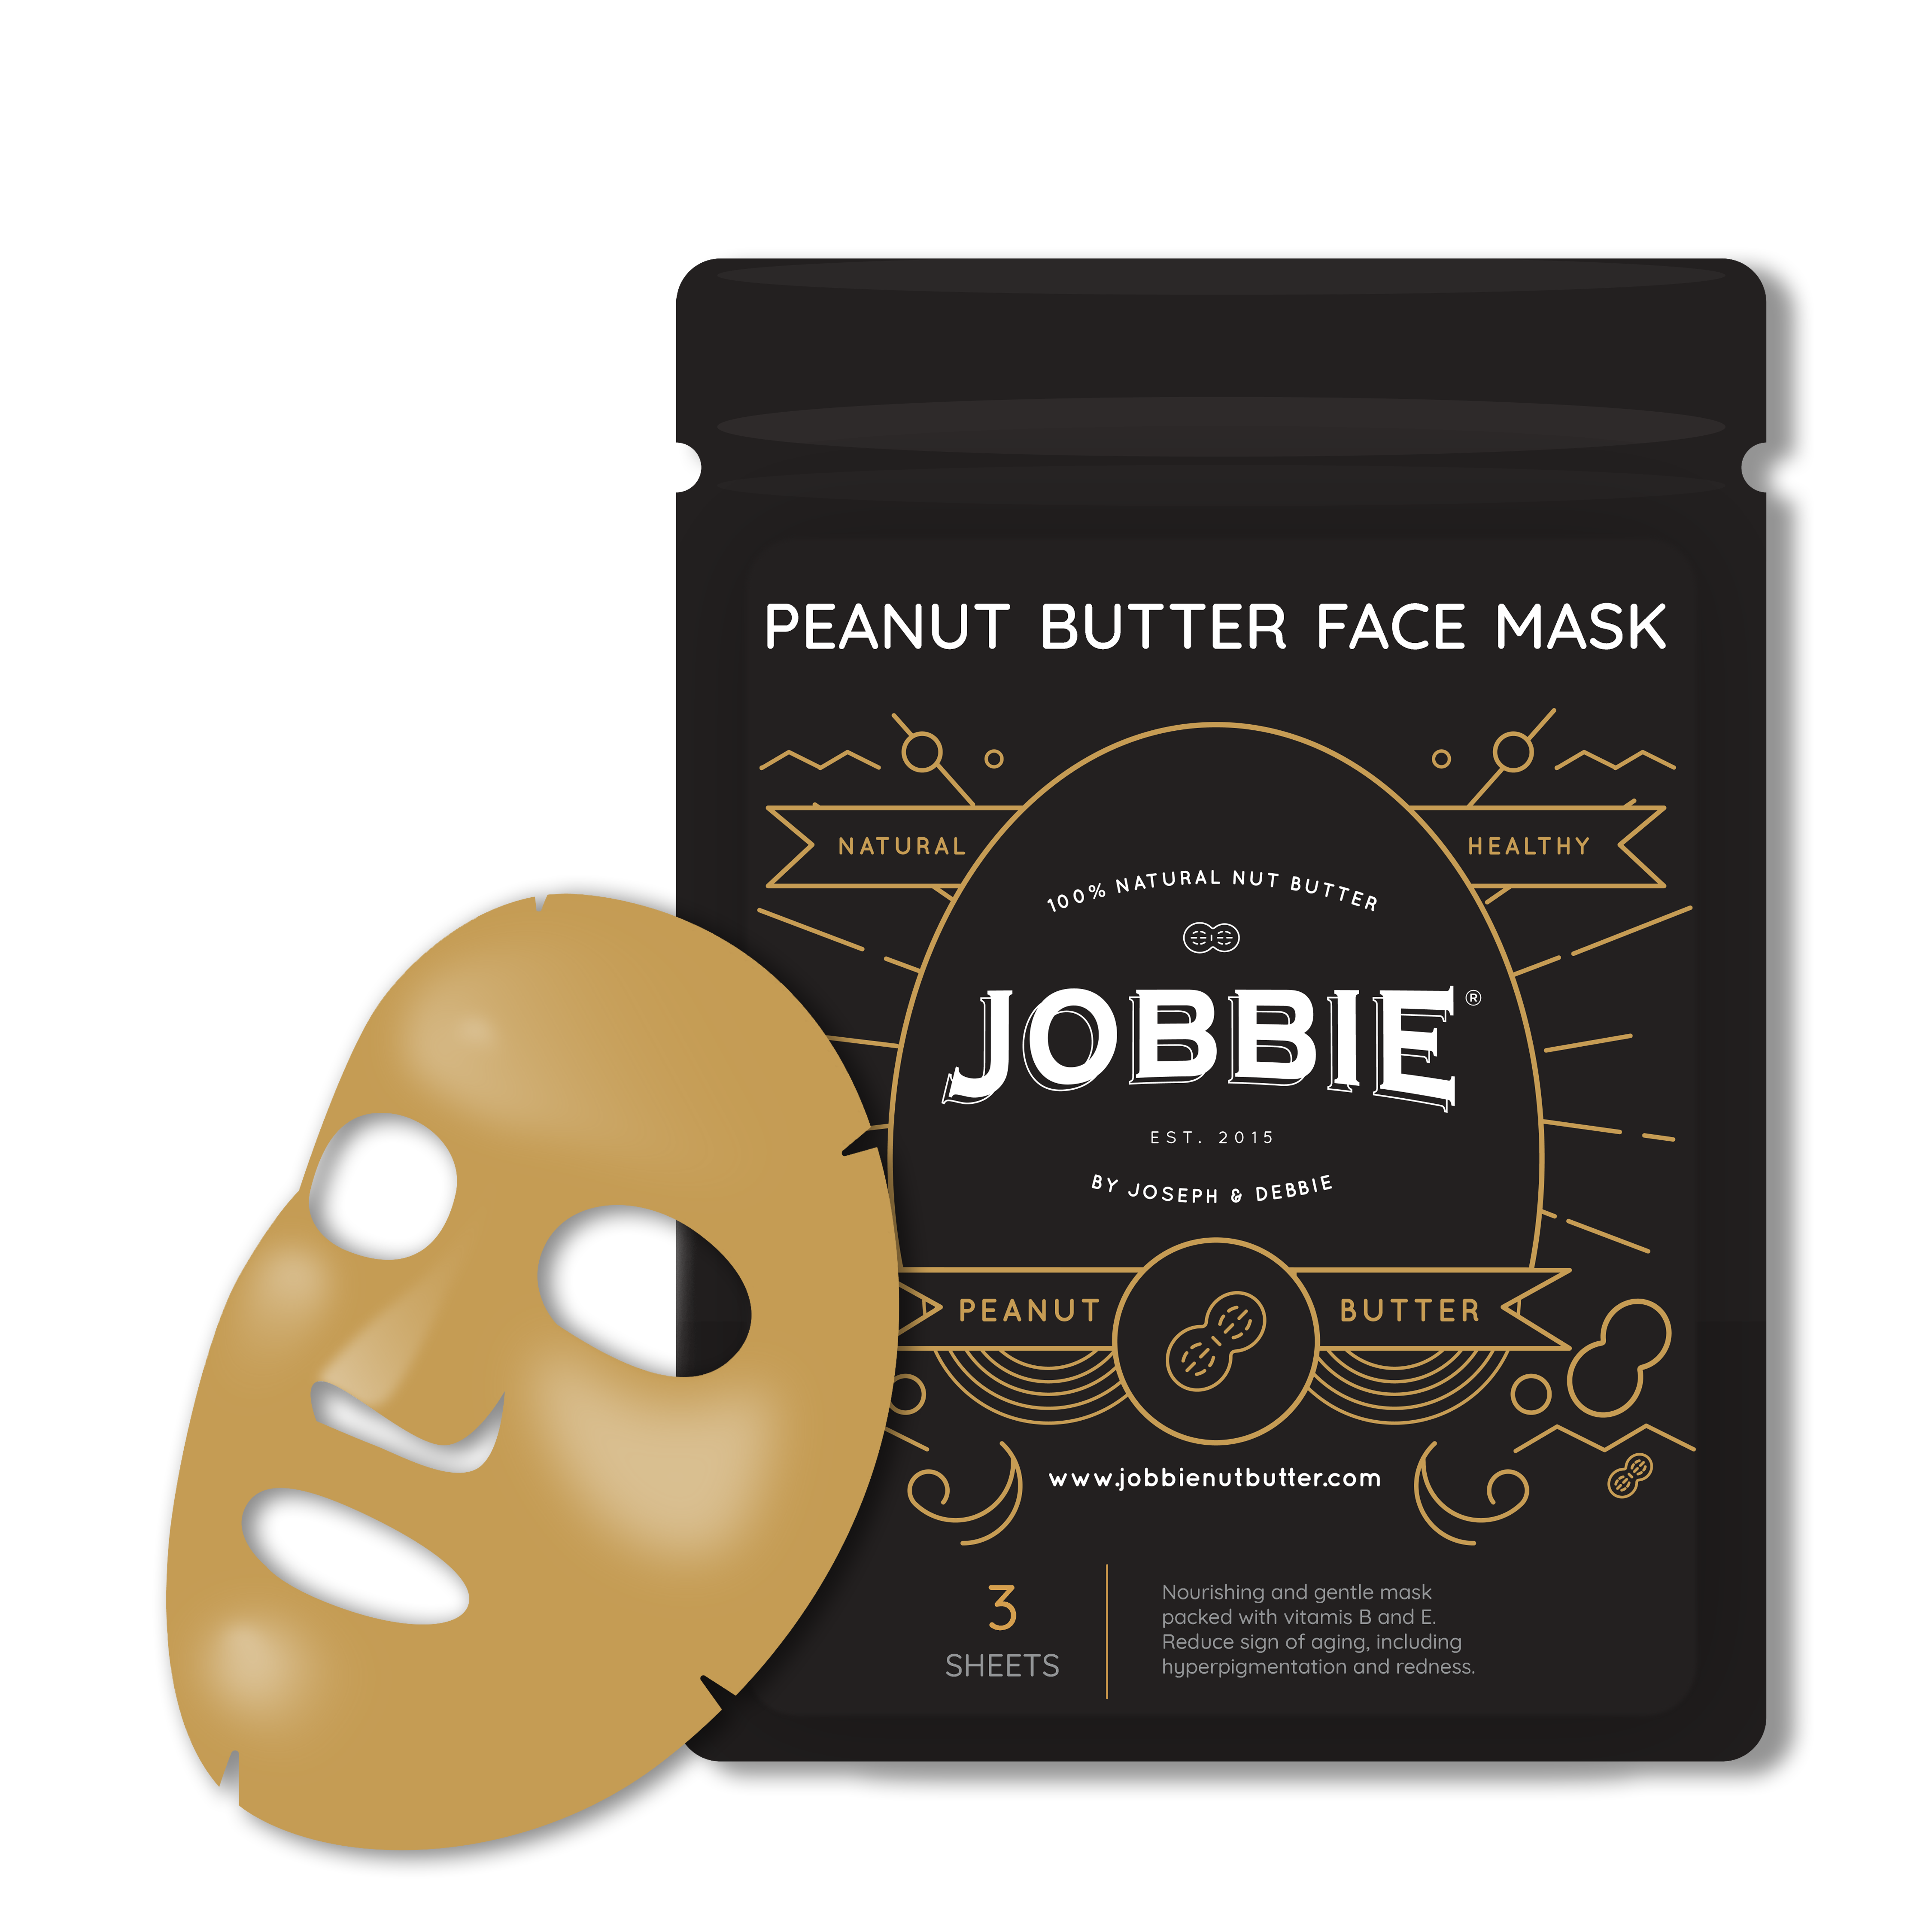 JOBBIE Peanut Butter Face Mask